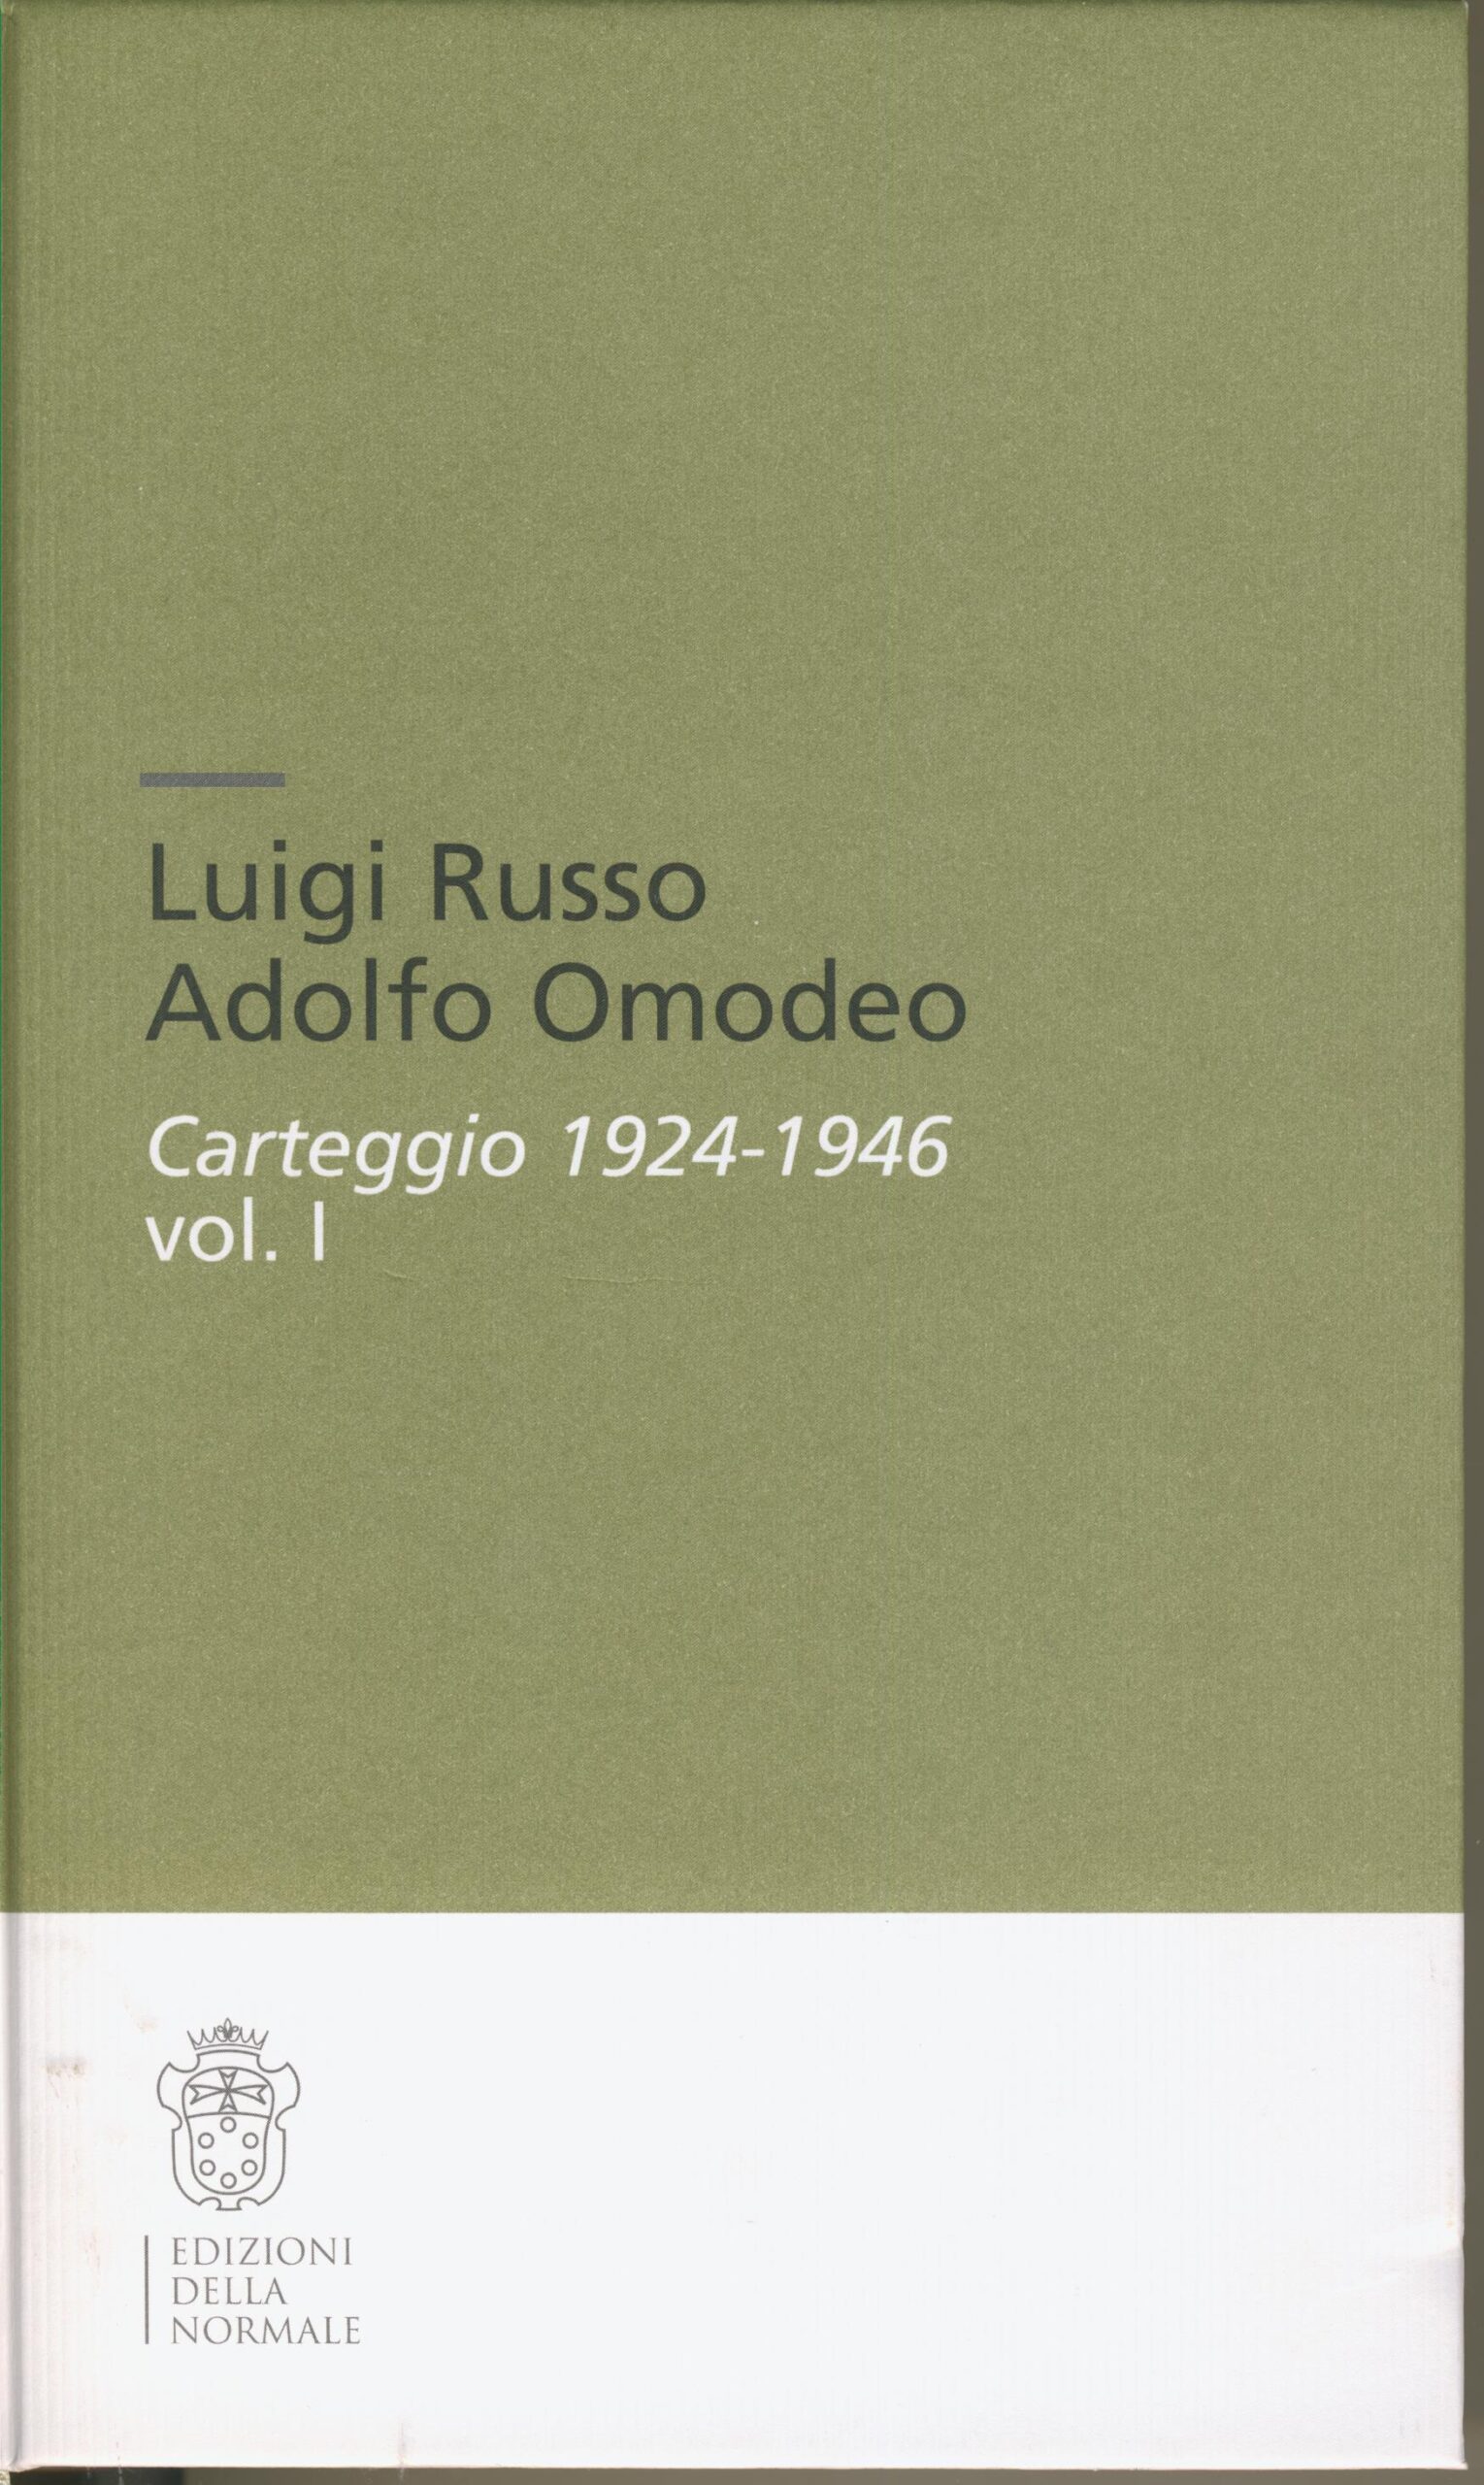 Luigi Russo, Adolfo Omodeo : carteggio 1924-1946